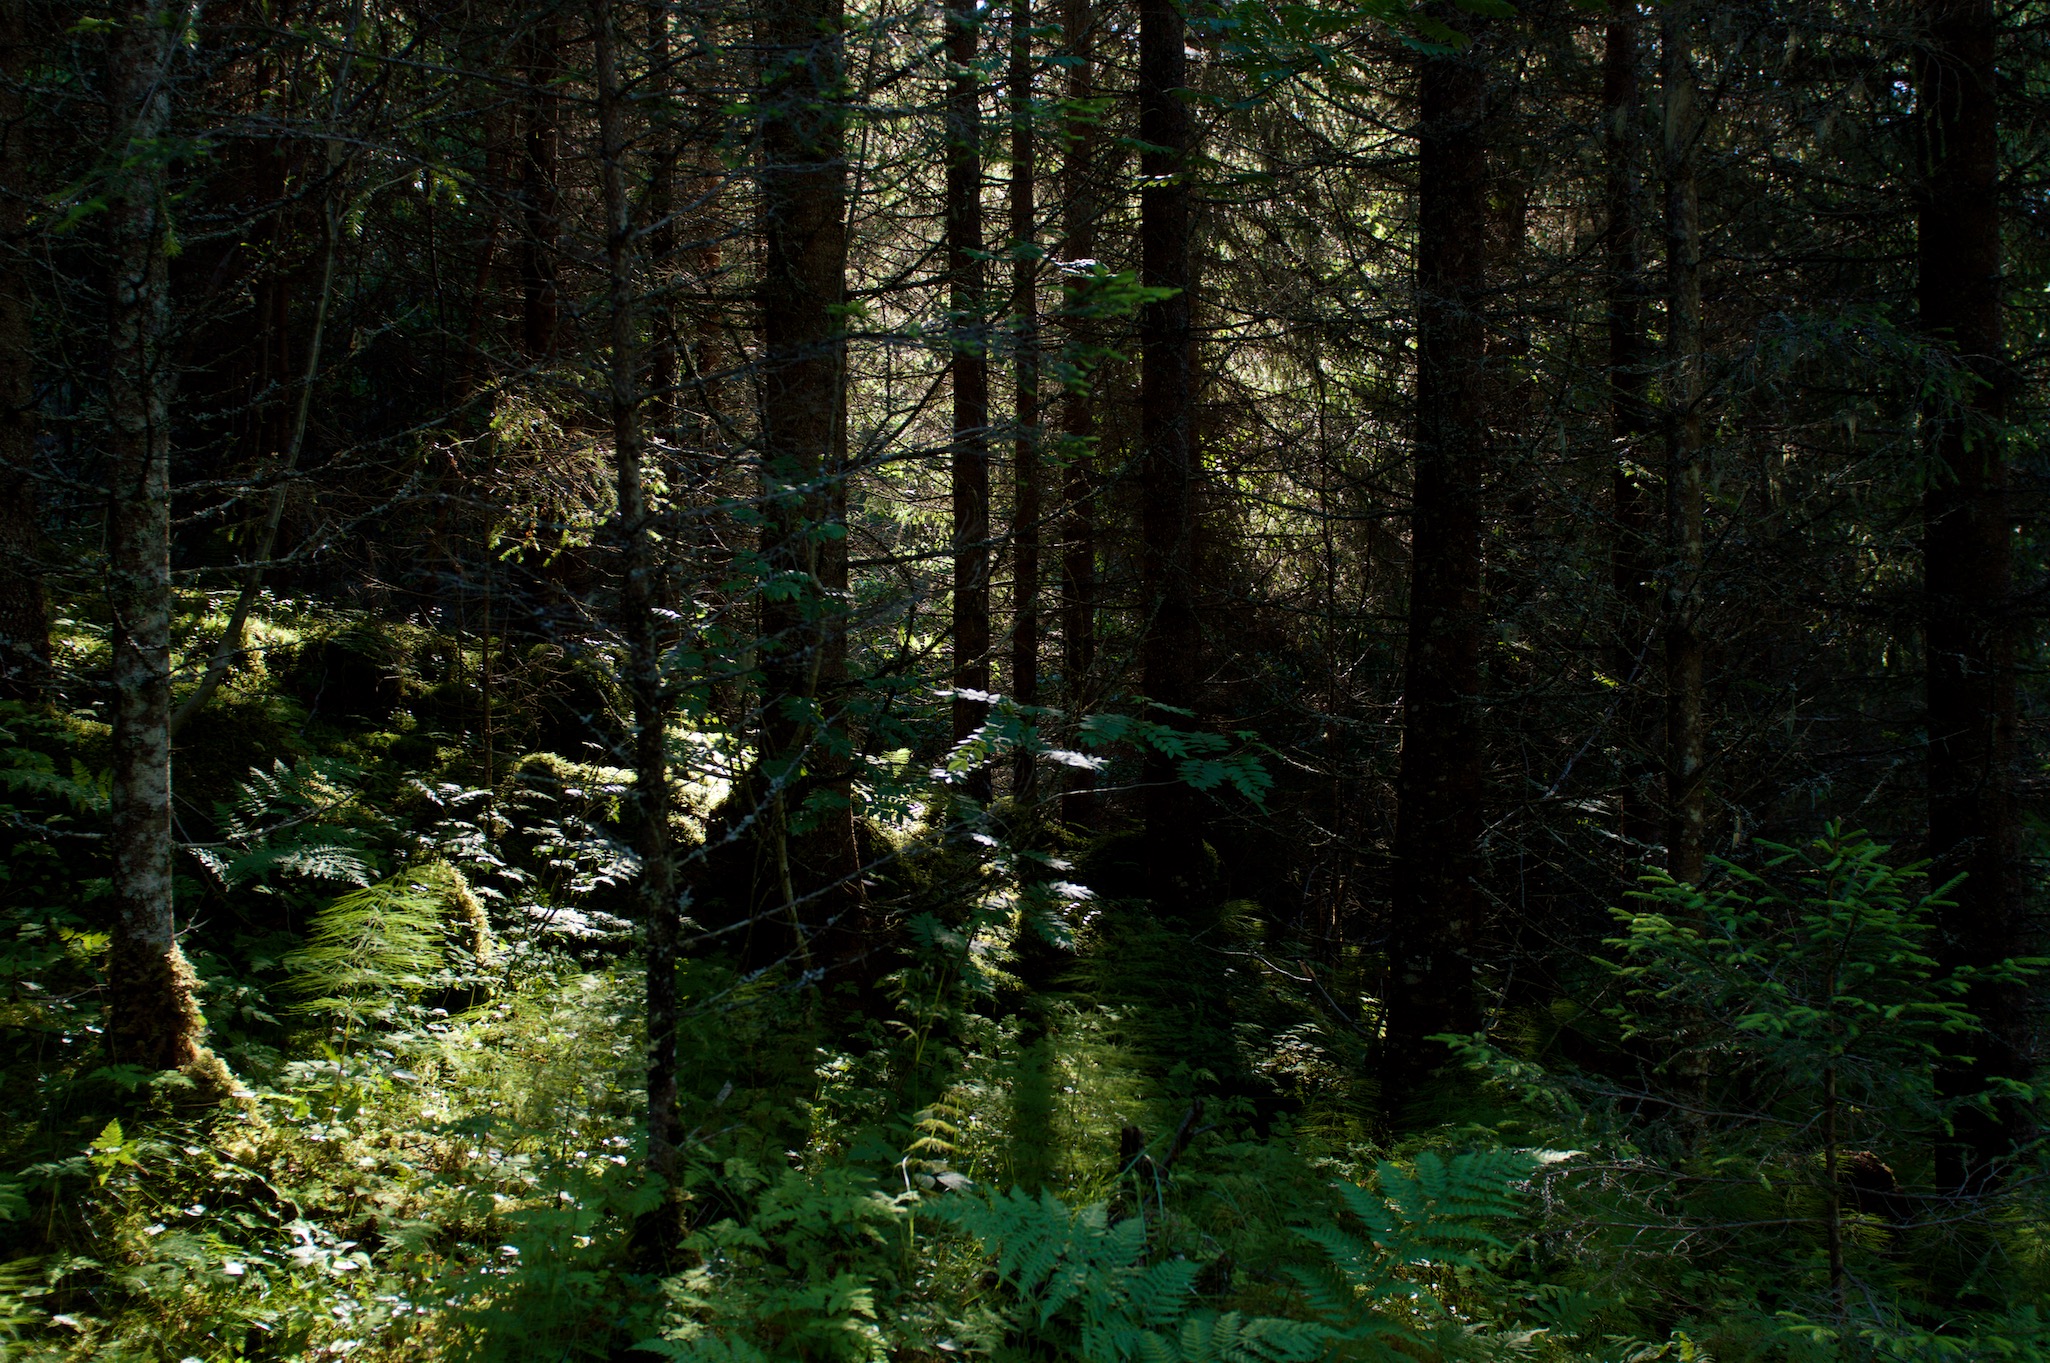 Forest floor in Hoebyen, Norway